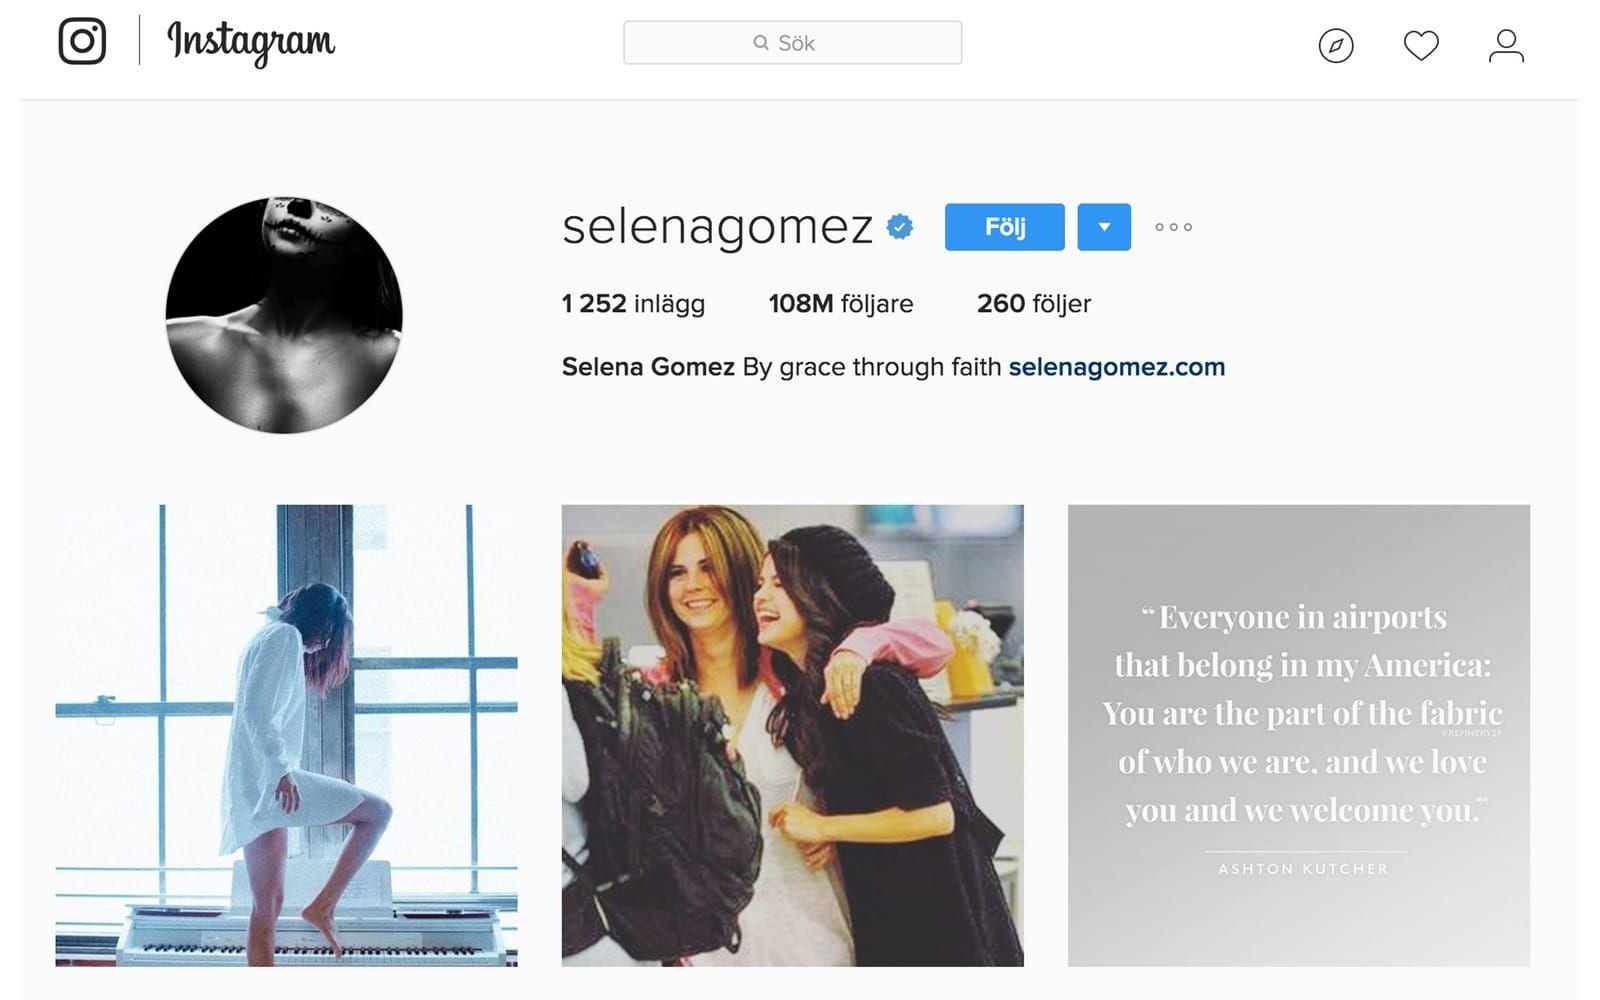 Med sina 108,5 miljoner följare på Instagram är artisten Selena Gomez är den privatperson som har flest följare i hela världen. Själv följer hon 260 konton. Foto: Skärmdump från Instagram